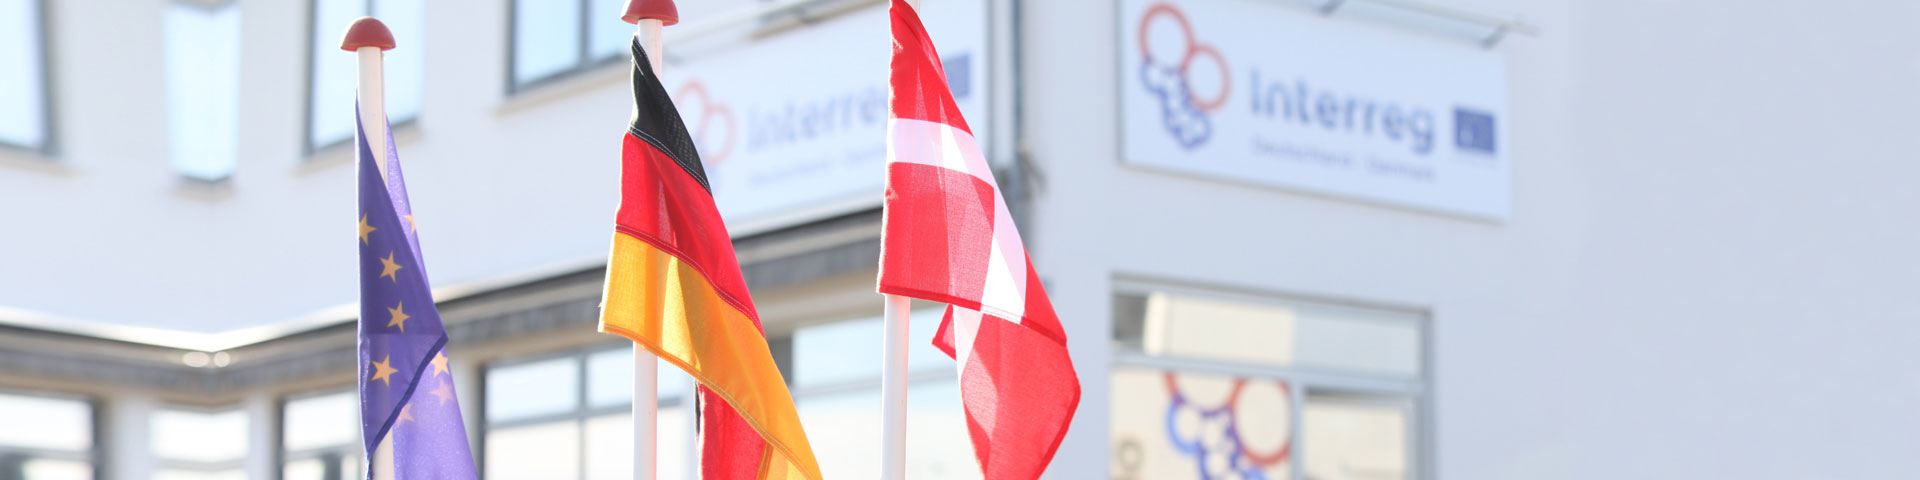 Vor dem Interreg-Gebäude wehen die europäische, deutsche und dänische Flagge 